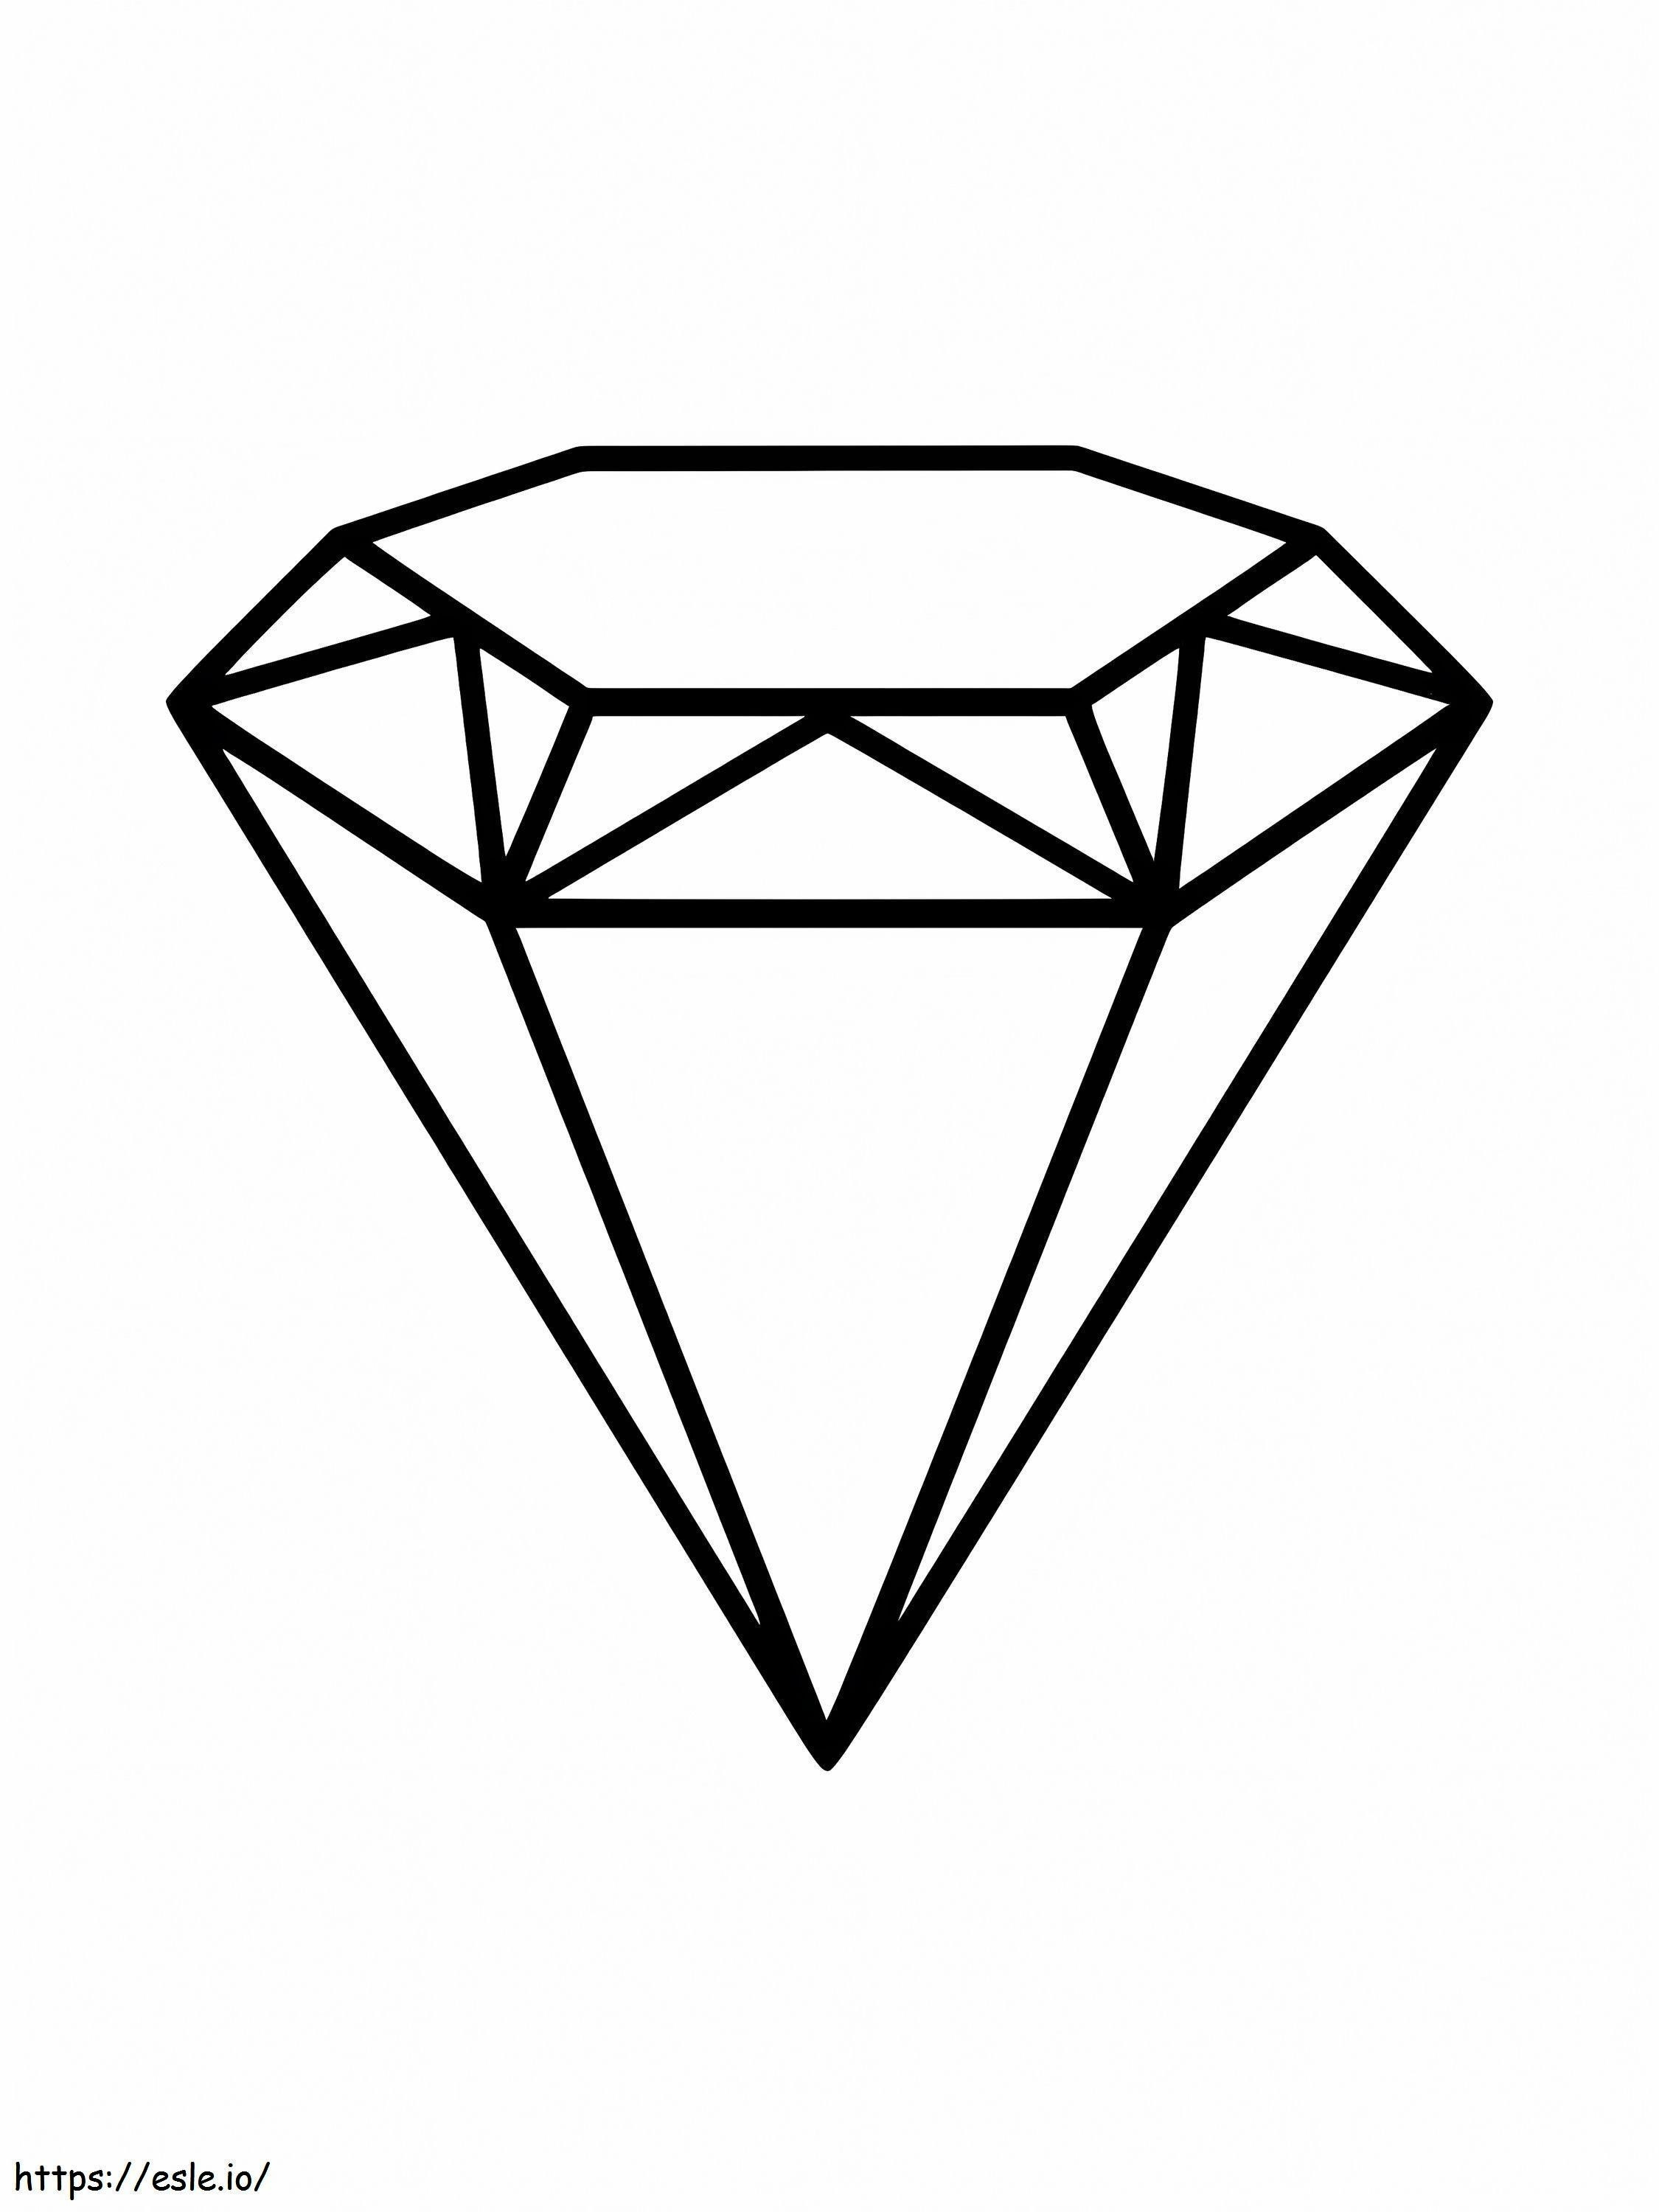 A Diamond coloring page